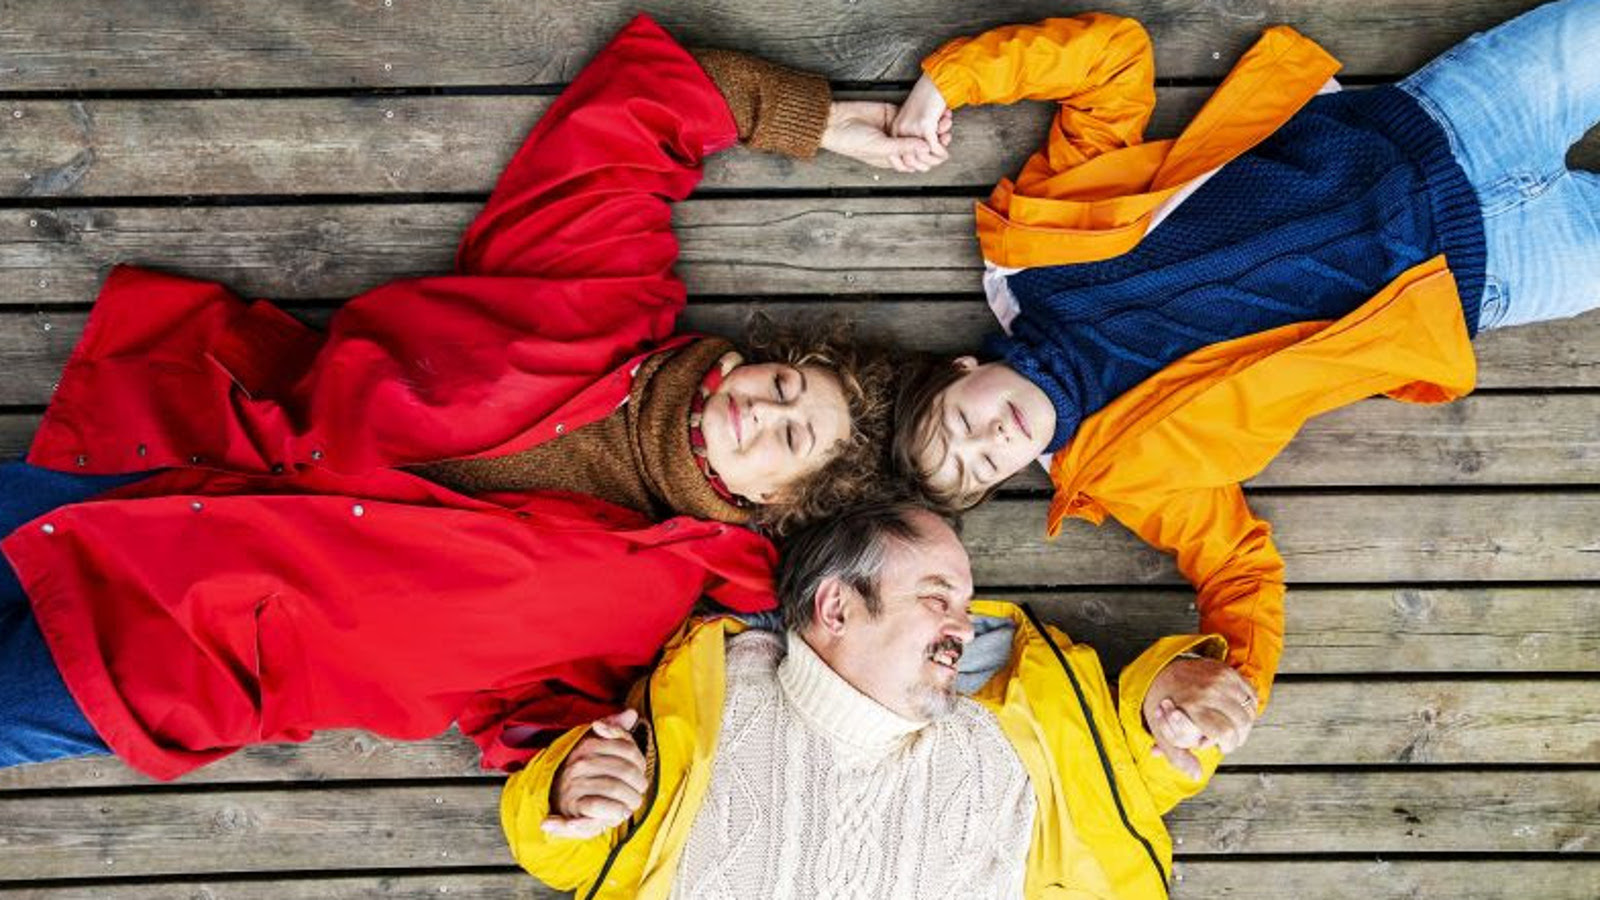 Kuvassa ovat ylhäältä päin kuvattuna punaisessa takissa Heidi Herala, keltaisessa takissa ja valkoisessa villapaidassa Juhani Laitala ja punaisessa takissa ja tumman sinisessä puserossa tytärtä esittävä näyttelijä. He makaavat lattialla.  